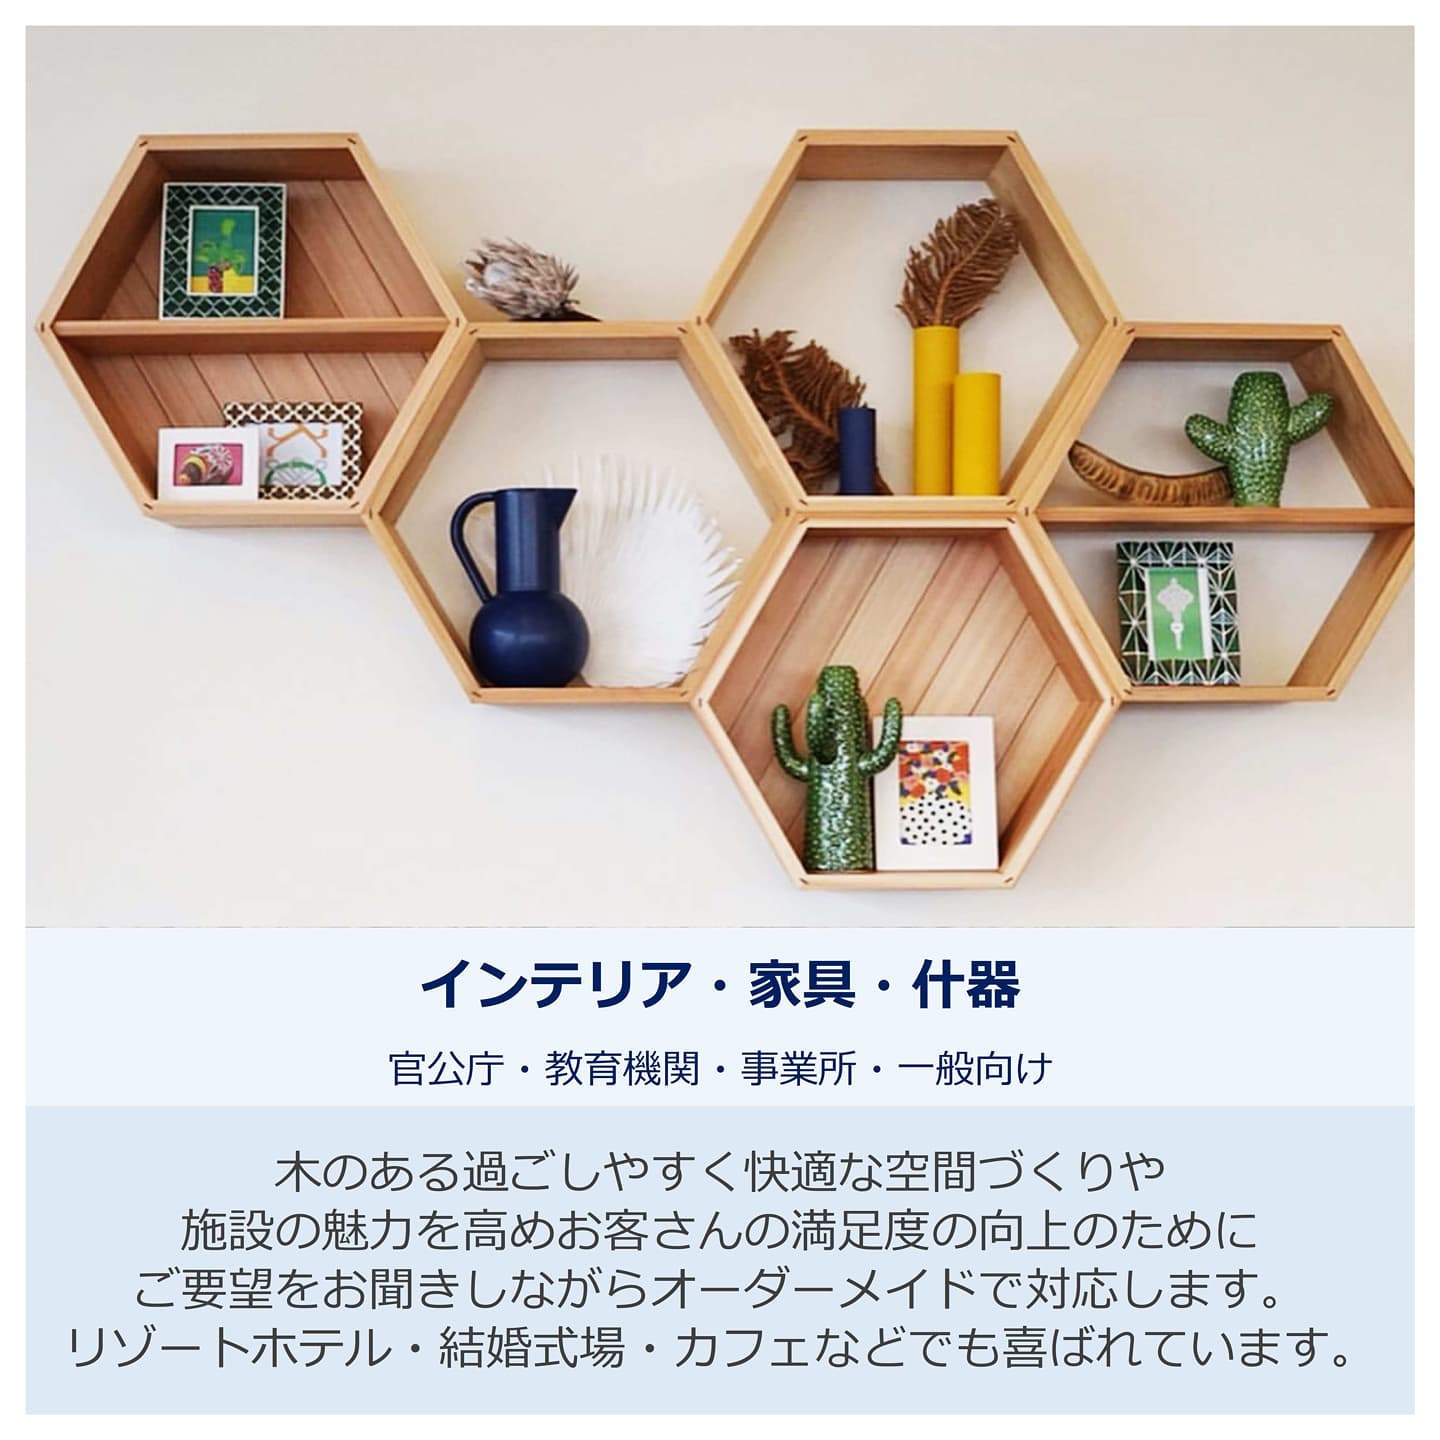 【活用事例】インテリア・家具・什器